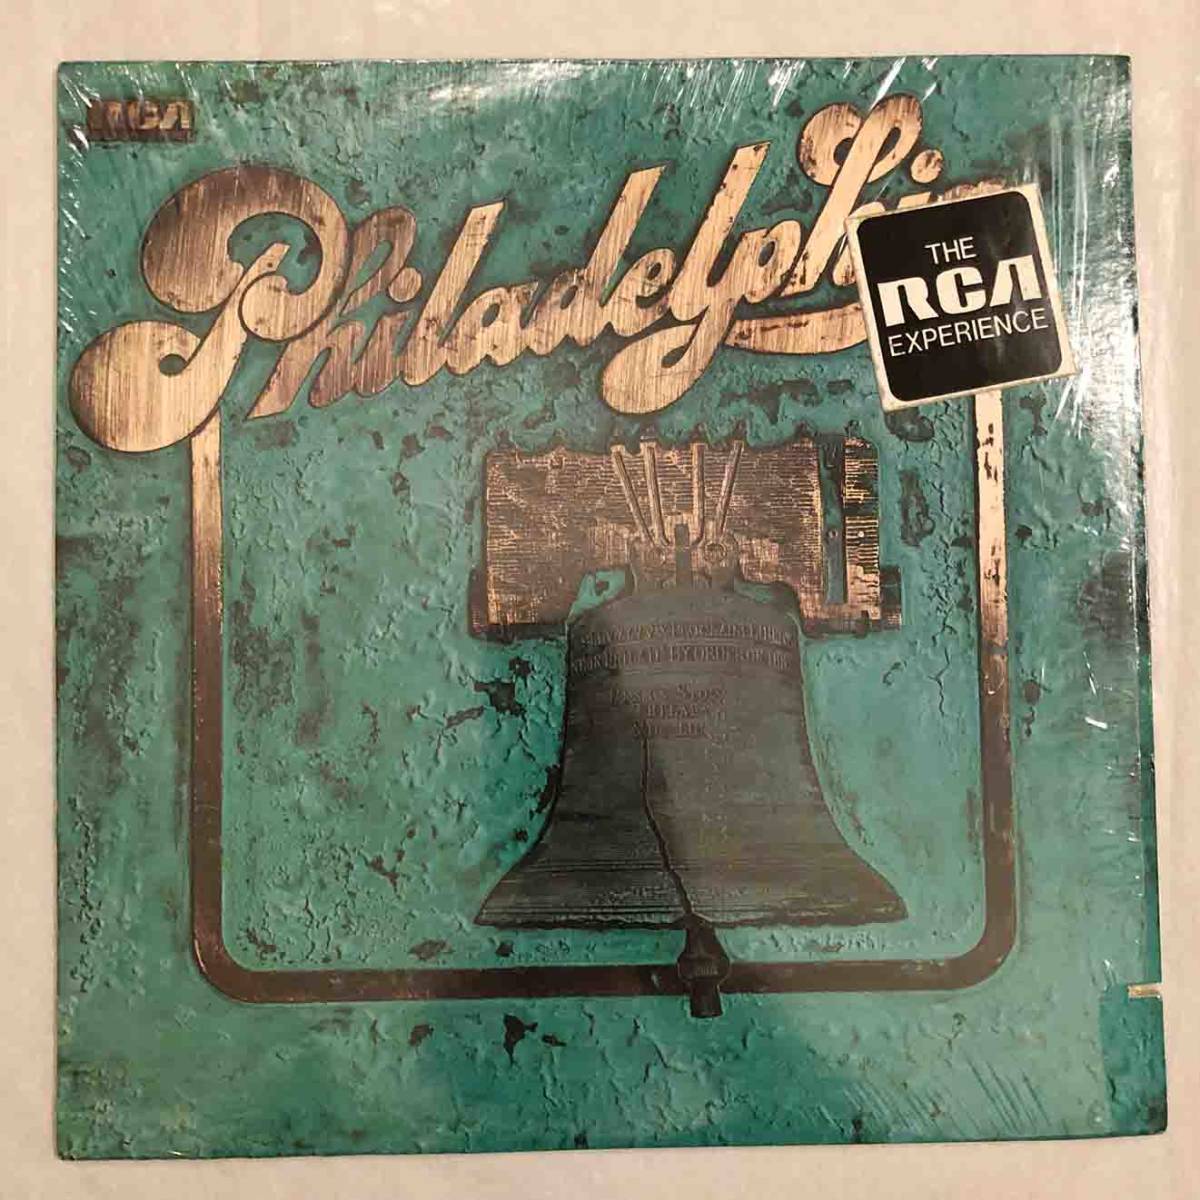 ■1974年 US盤 オリジナル Philadelphia / Philadelphia 12”LP APL1-0714 RCA Victor シュリンク付き_画像1